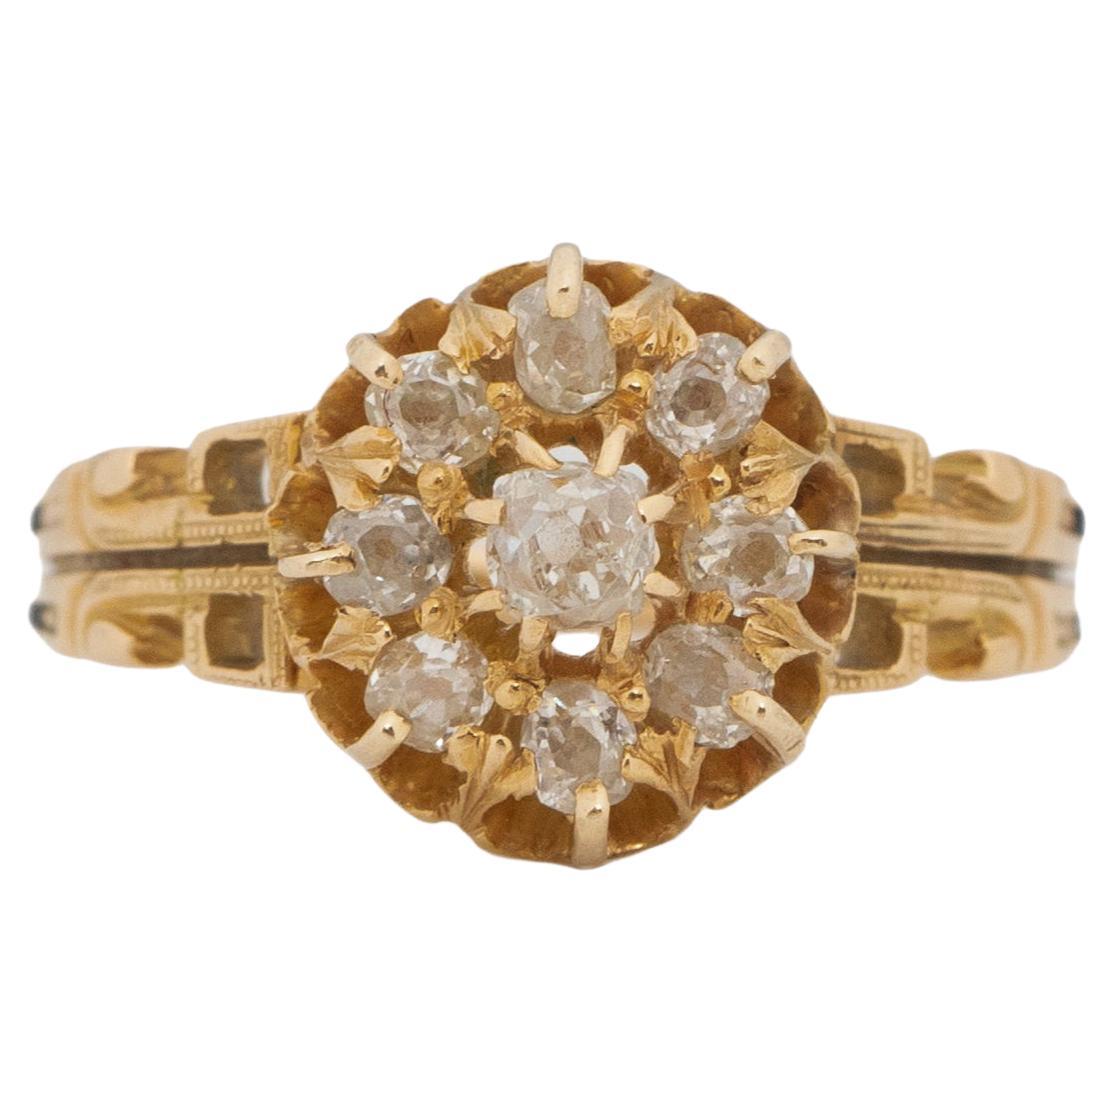 .50 Carat Total Weight Victorian Diamond 14 Karat Yellow Gold Engagement Ring